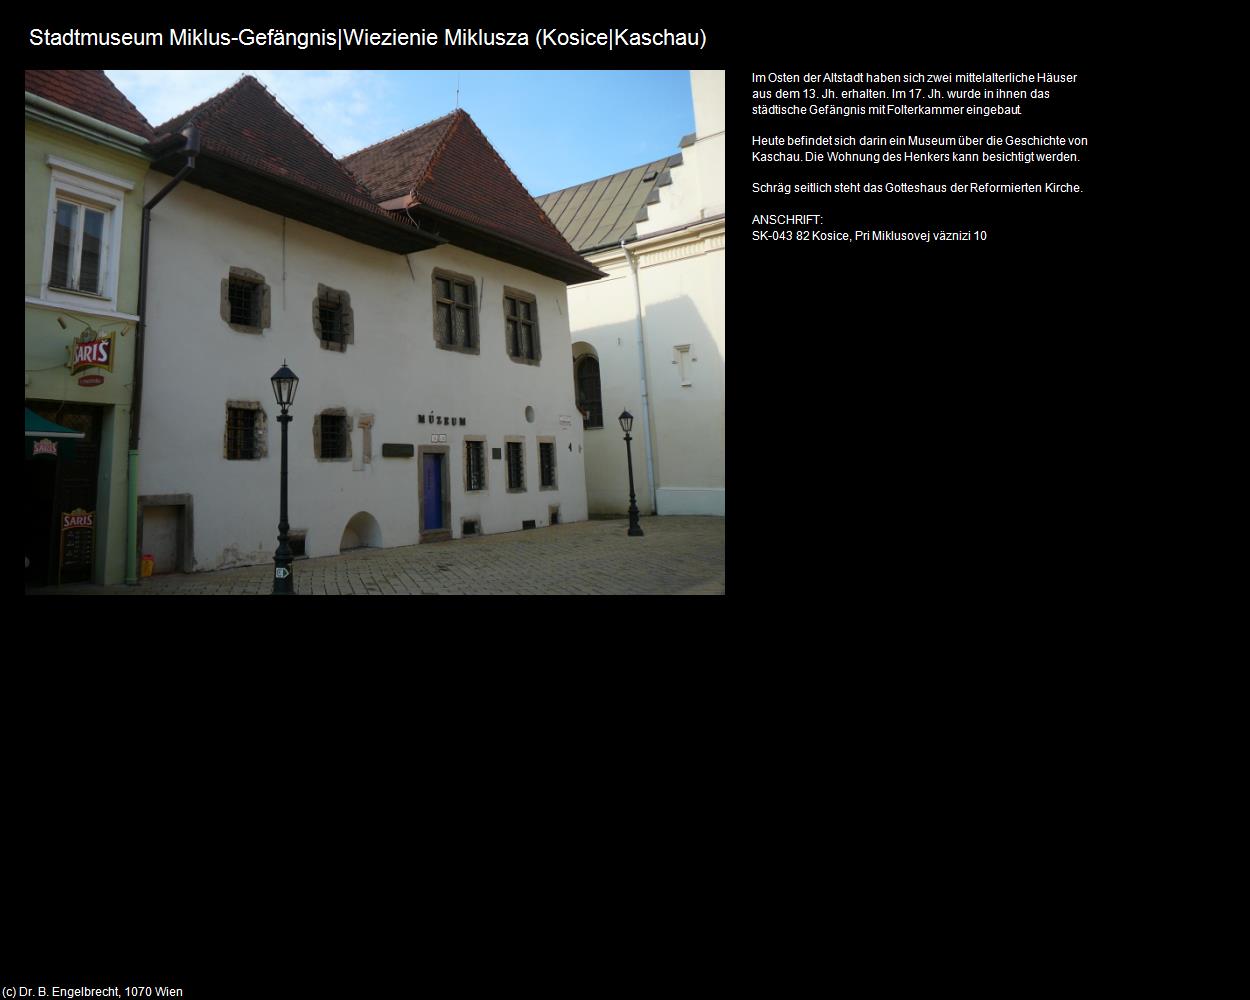 Stadtmuseum Miklus-Gefängnis (Kosice|Kaschau) in SLOWAKEI